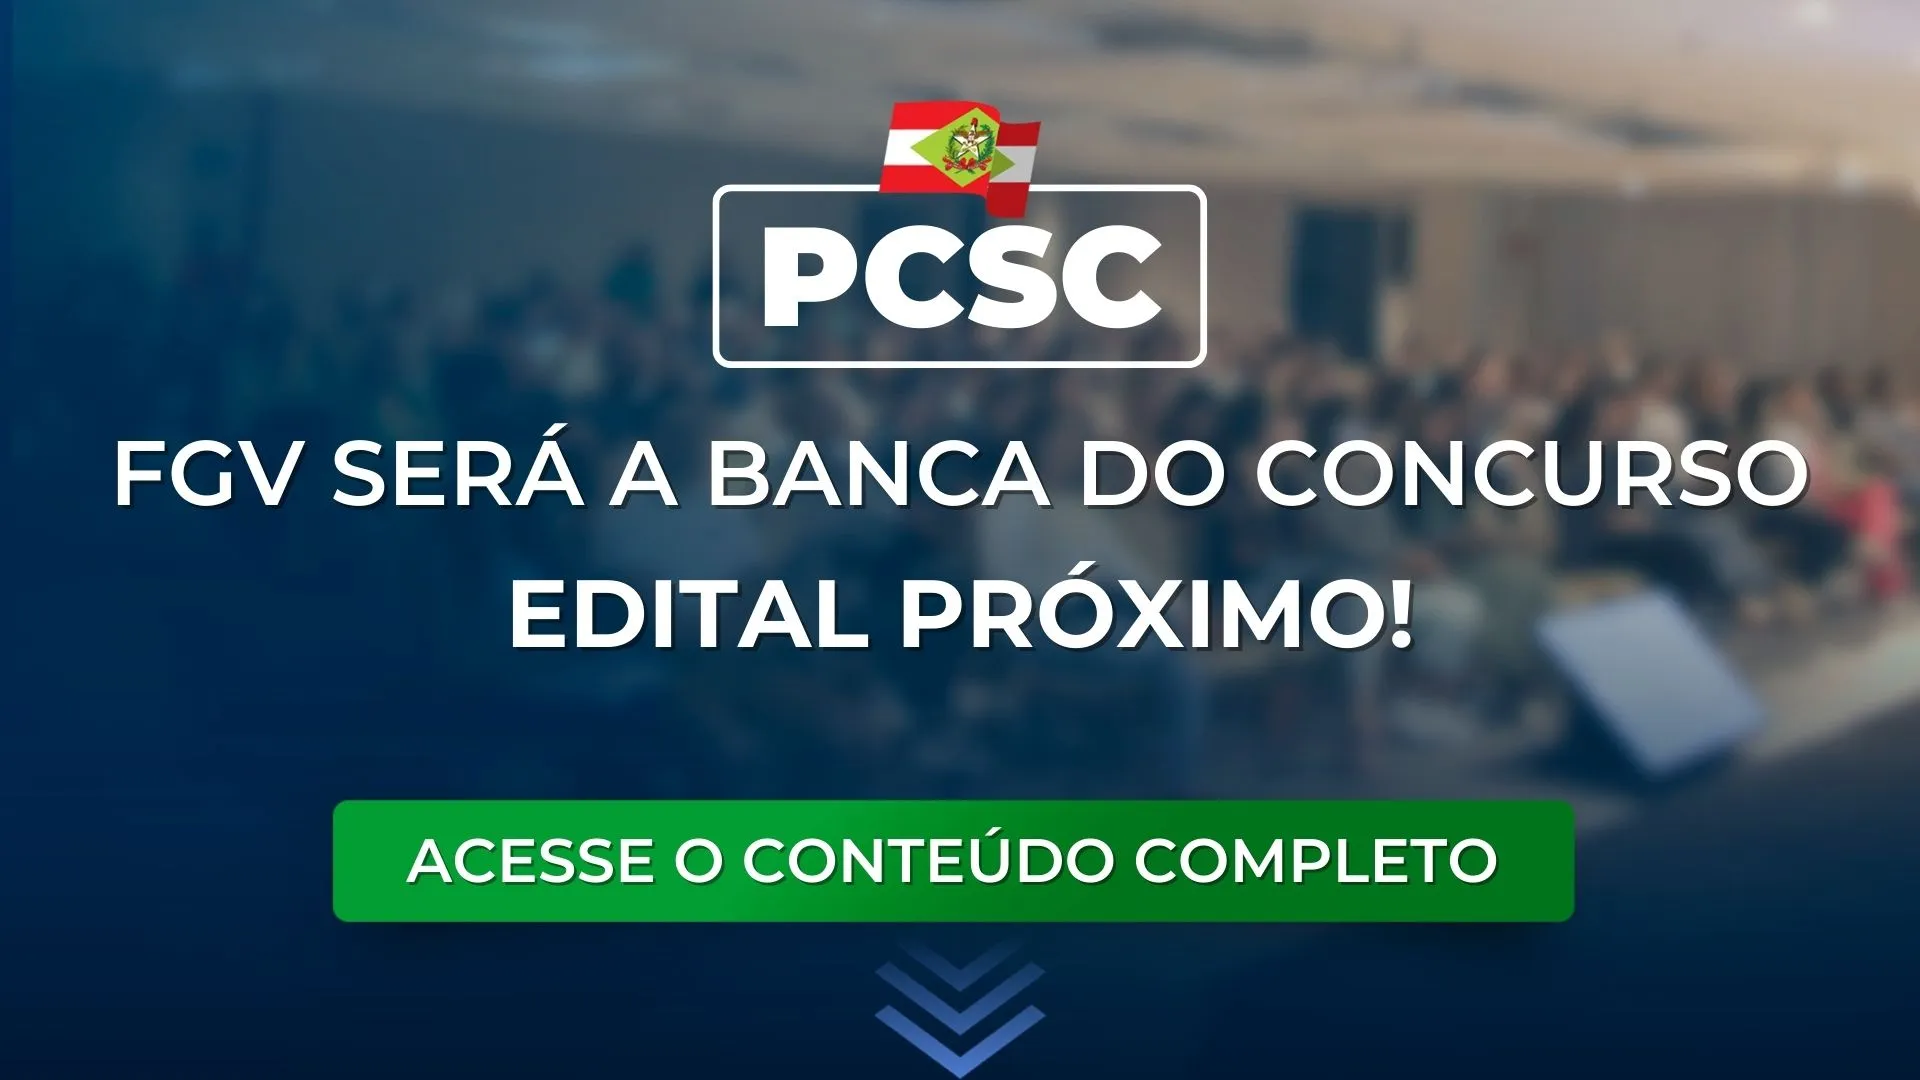 PCSC: FGV será a banca do concurso. Edital próximo!